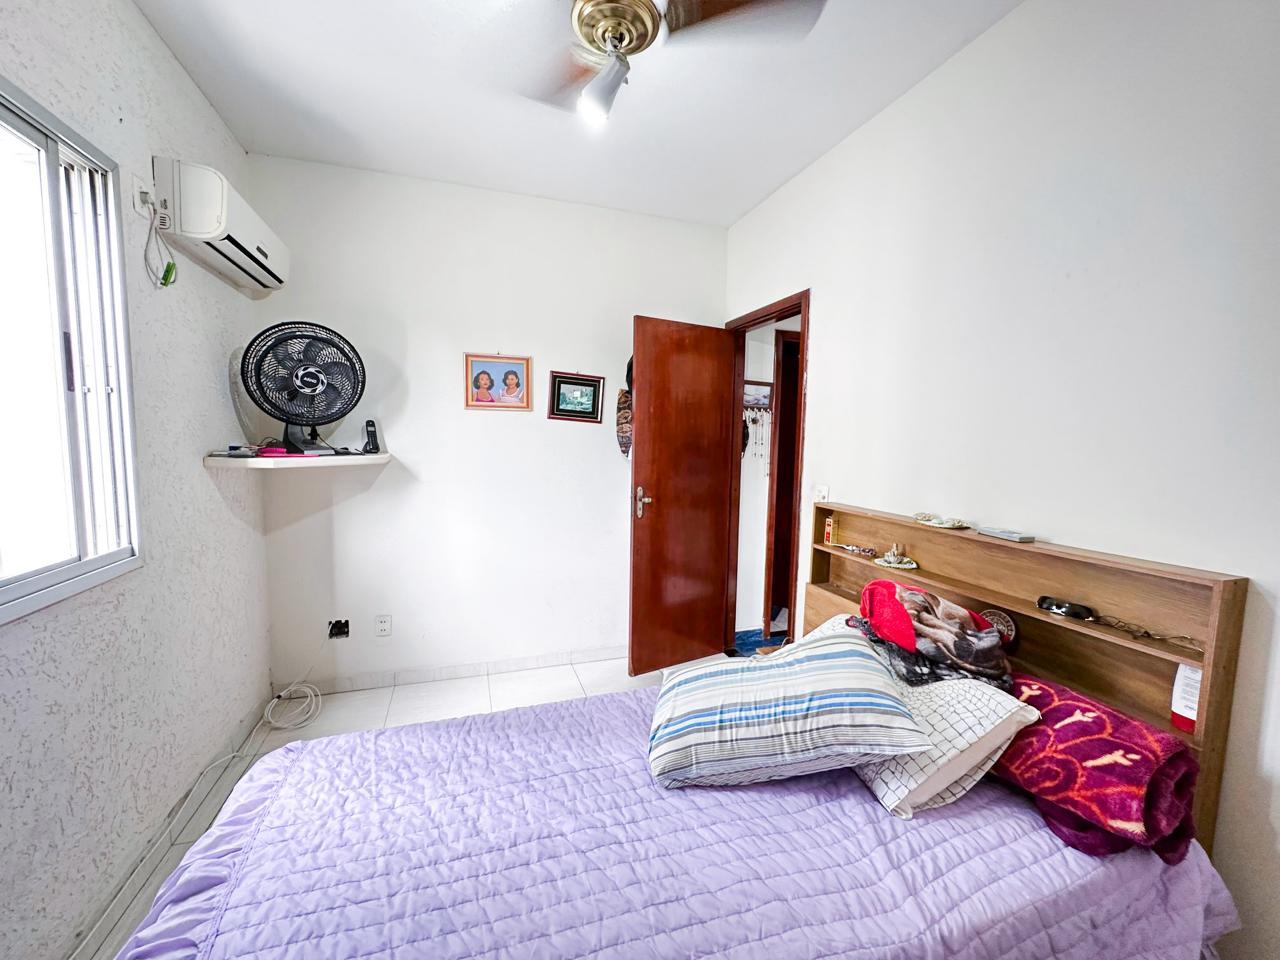 Encruzilhada apartamento com 2 dormitórios em piso frio, sala para 2 ambientes em piso frio com sacada e vista livre - foto 8